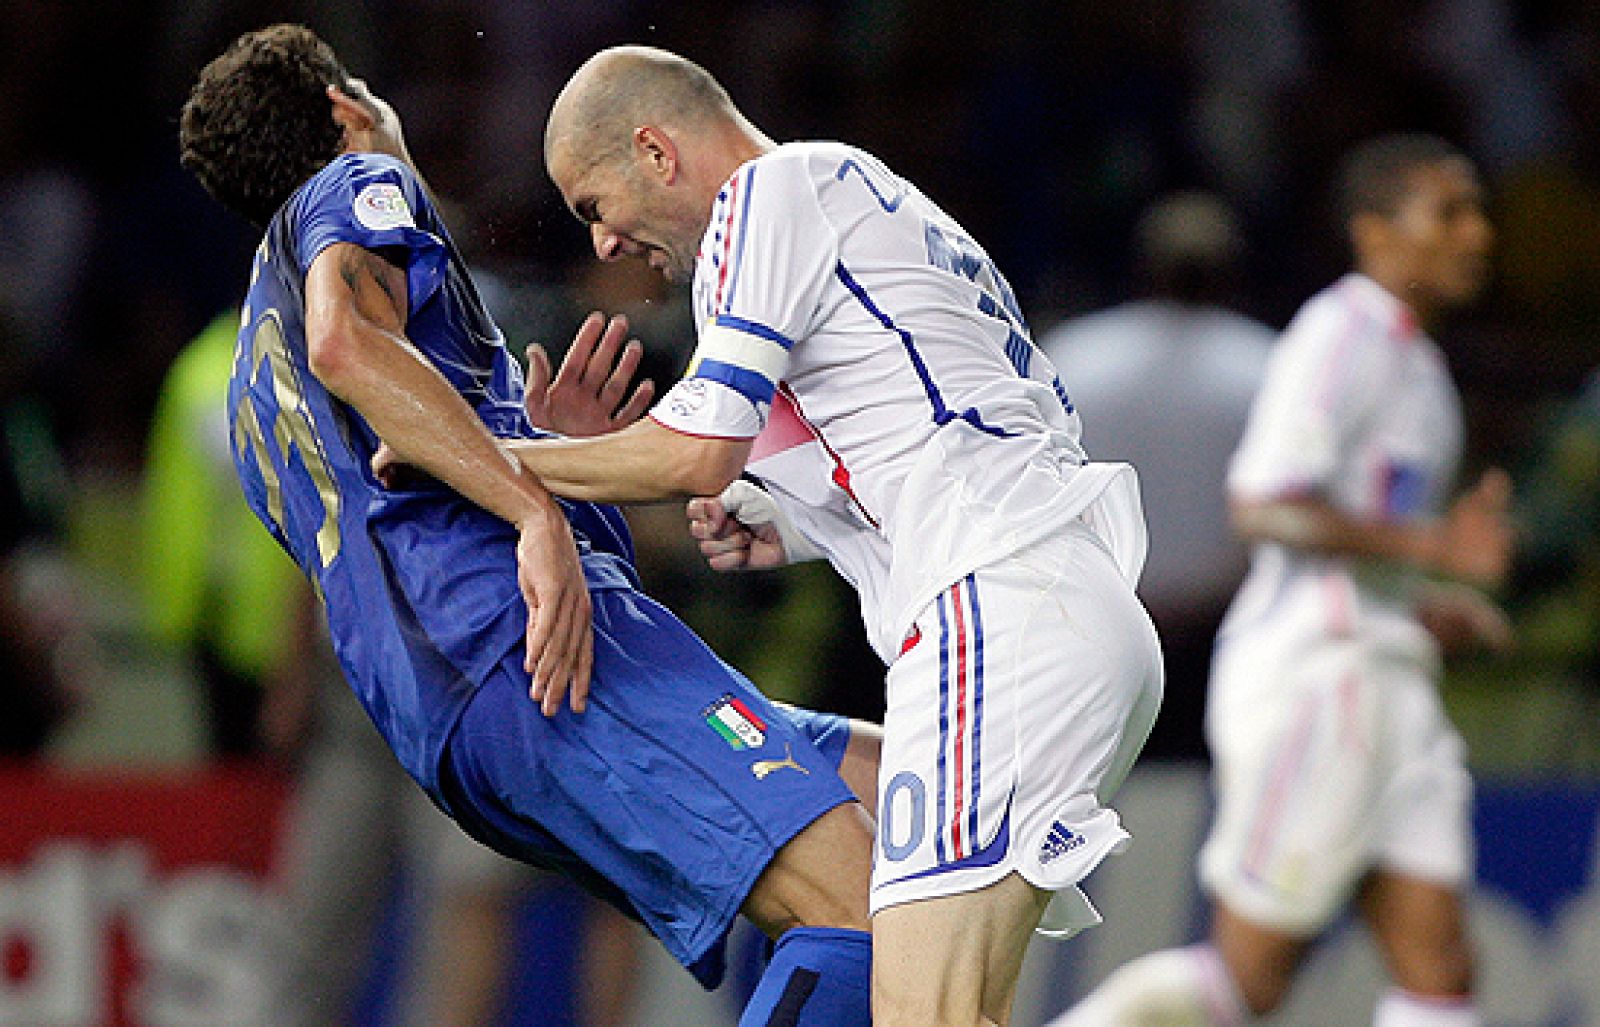 Alemania 2006, El adiós de Zidane